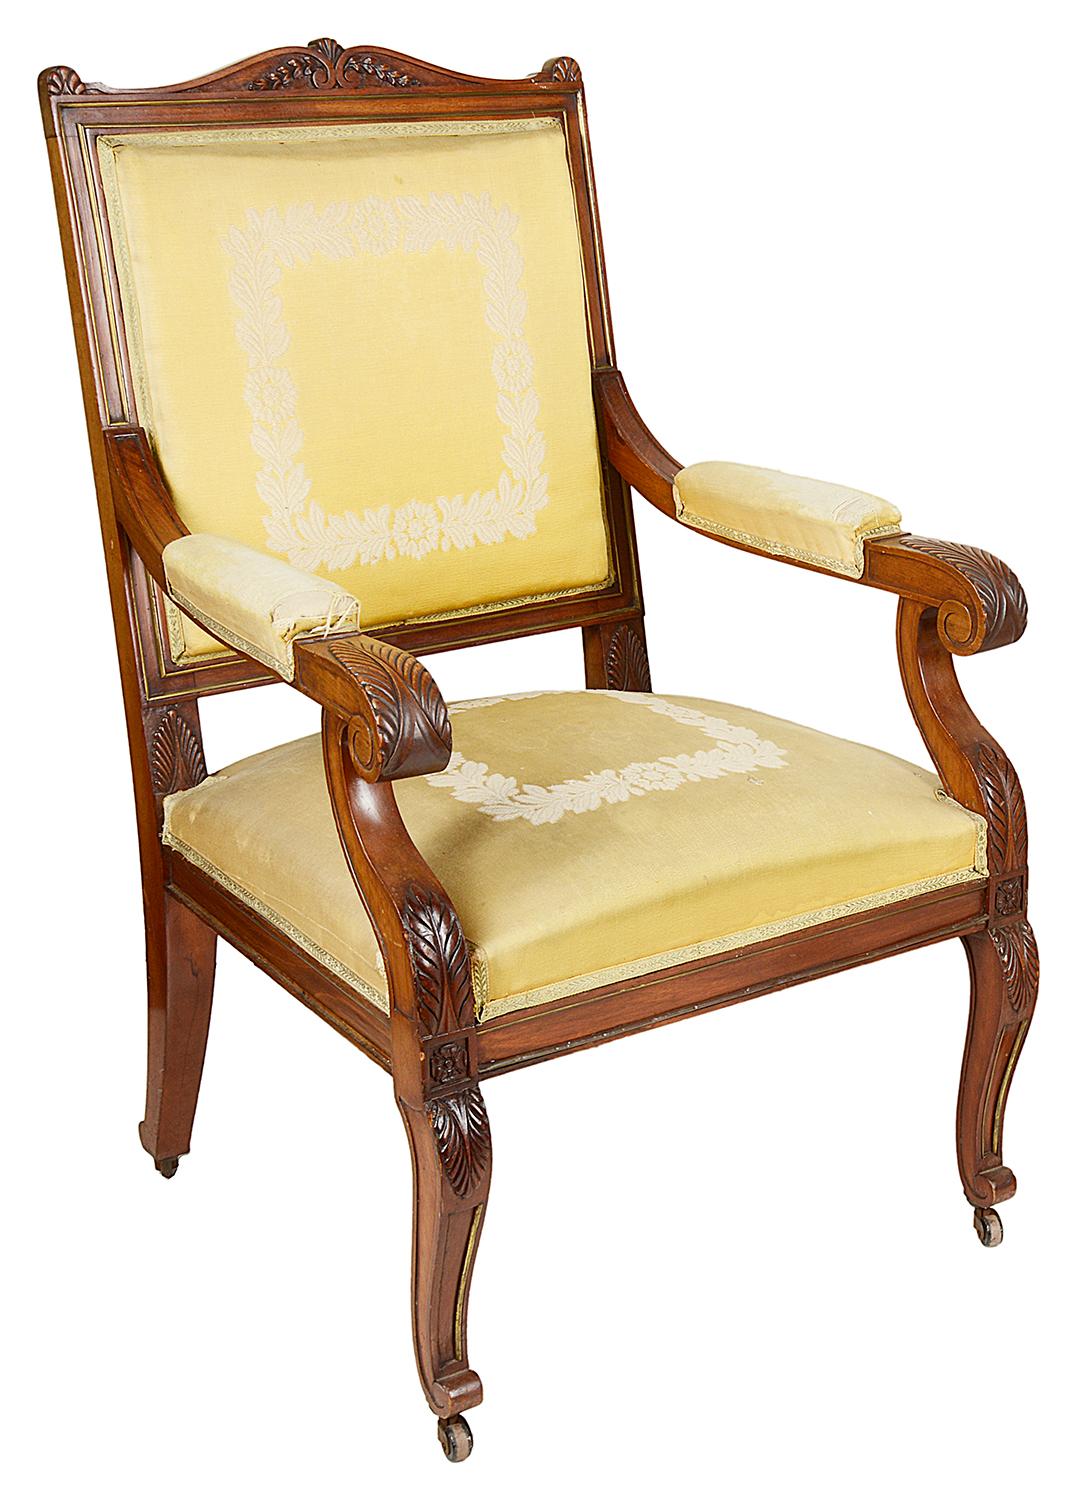 Ein Paar französischer Sessel aus Mahagoni im Empire-Stil von guter Qualität. Jedes mit klassischem Blattdekor, Messingbeschlägen, gepolstertem Stoff über Rückenlehne und Sitzen und auf geschnitzten, geschwungenen Kabriole-Beinen.